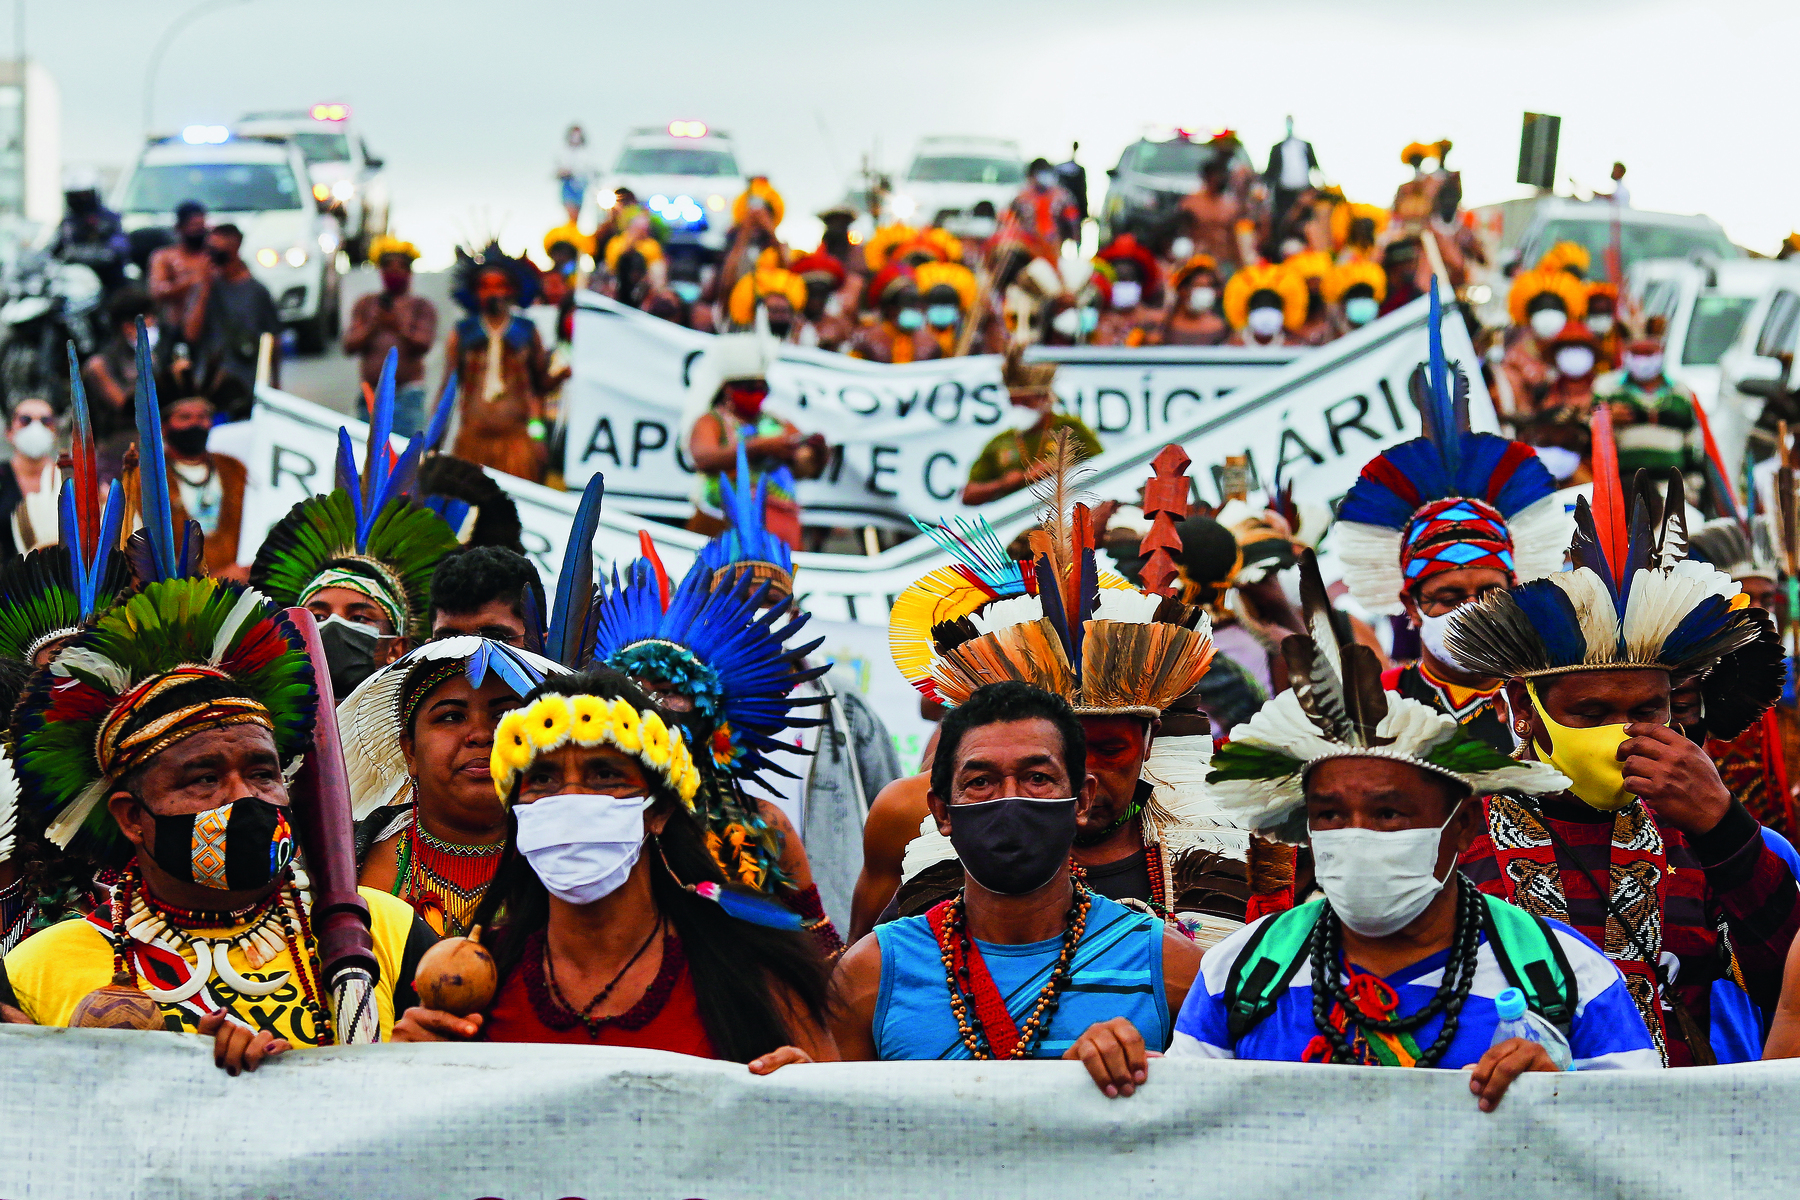 Fotografia. Uma multidão de homens e mulheres indígenas, utilizando cocares com penas coloridas e colares sobre seus peitos, lado a lado, segurando faixas com textos.